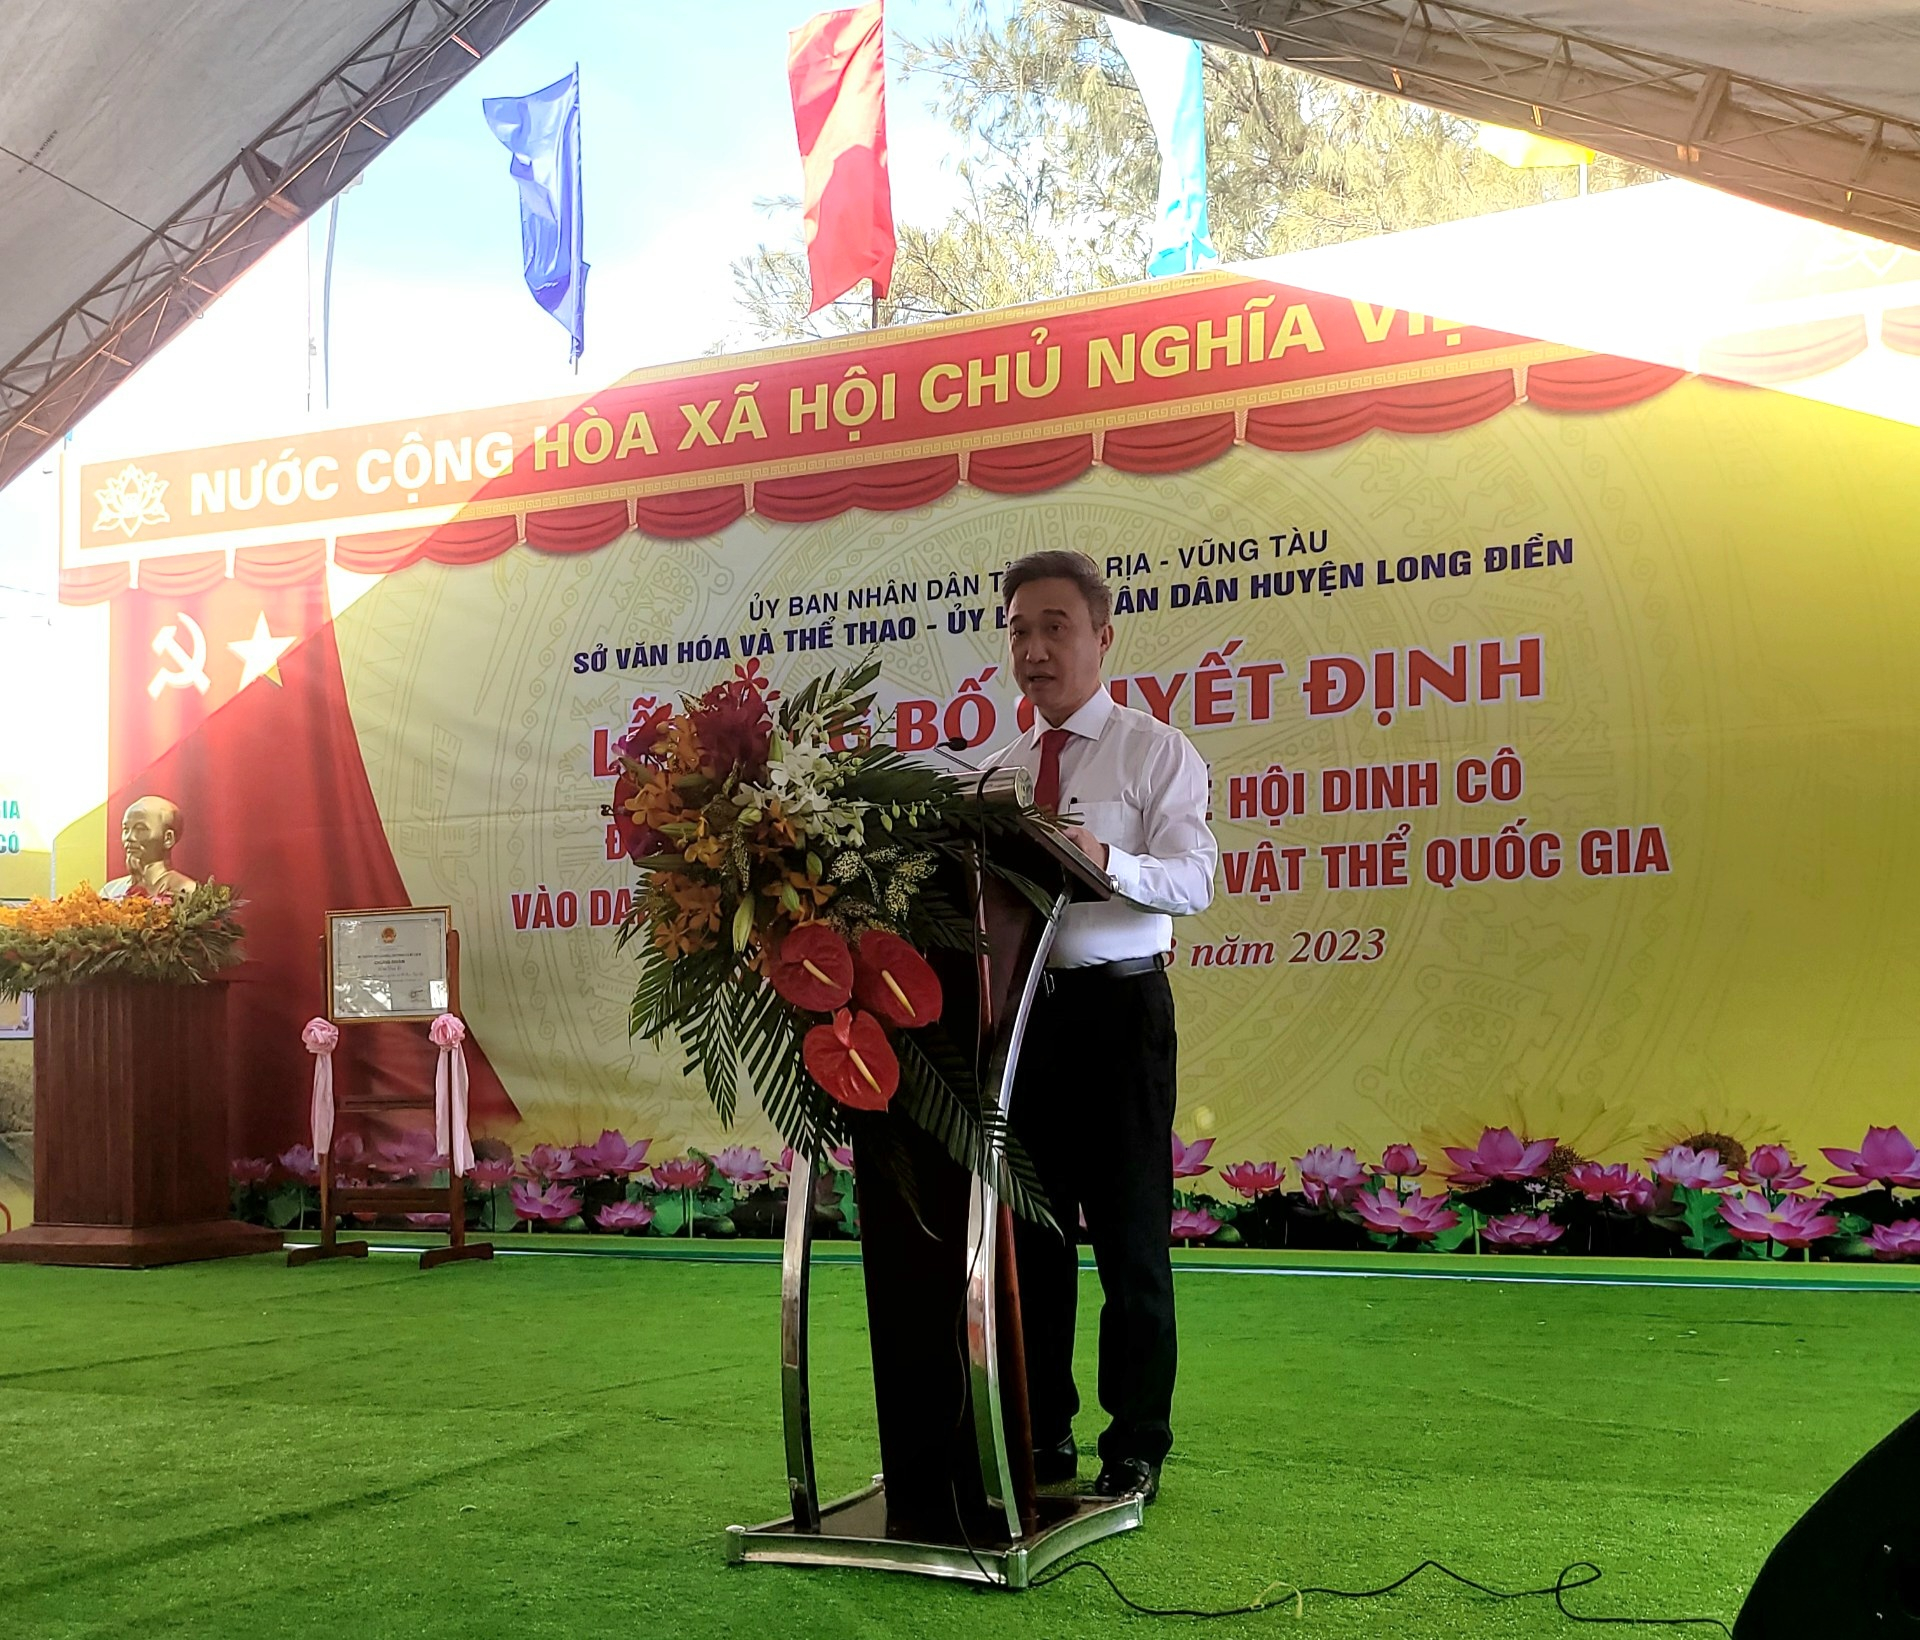 Ông Đặng Minh Thông - Phó Chủ tịch UBND tỉnh Bà Rịa - Vũng Tàu phát biểu tại buổi lễ